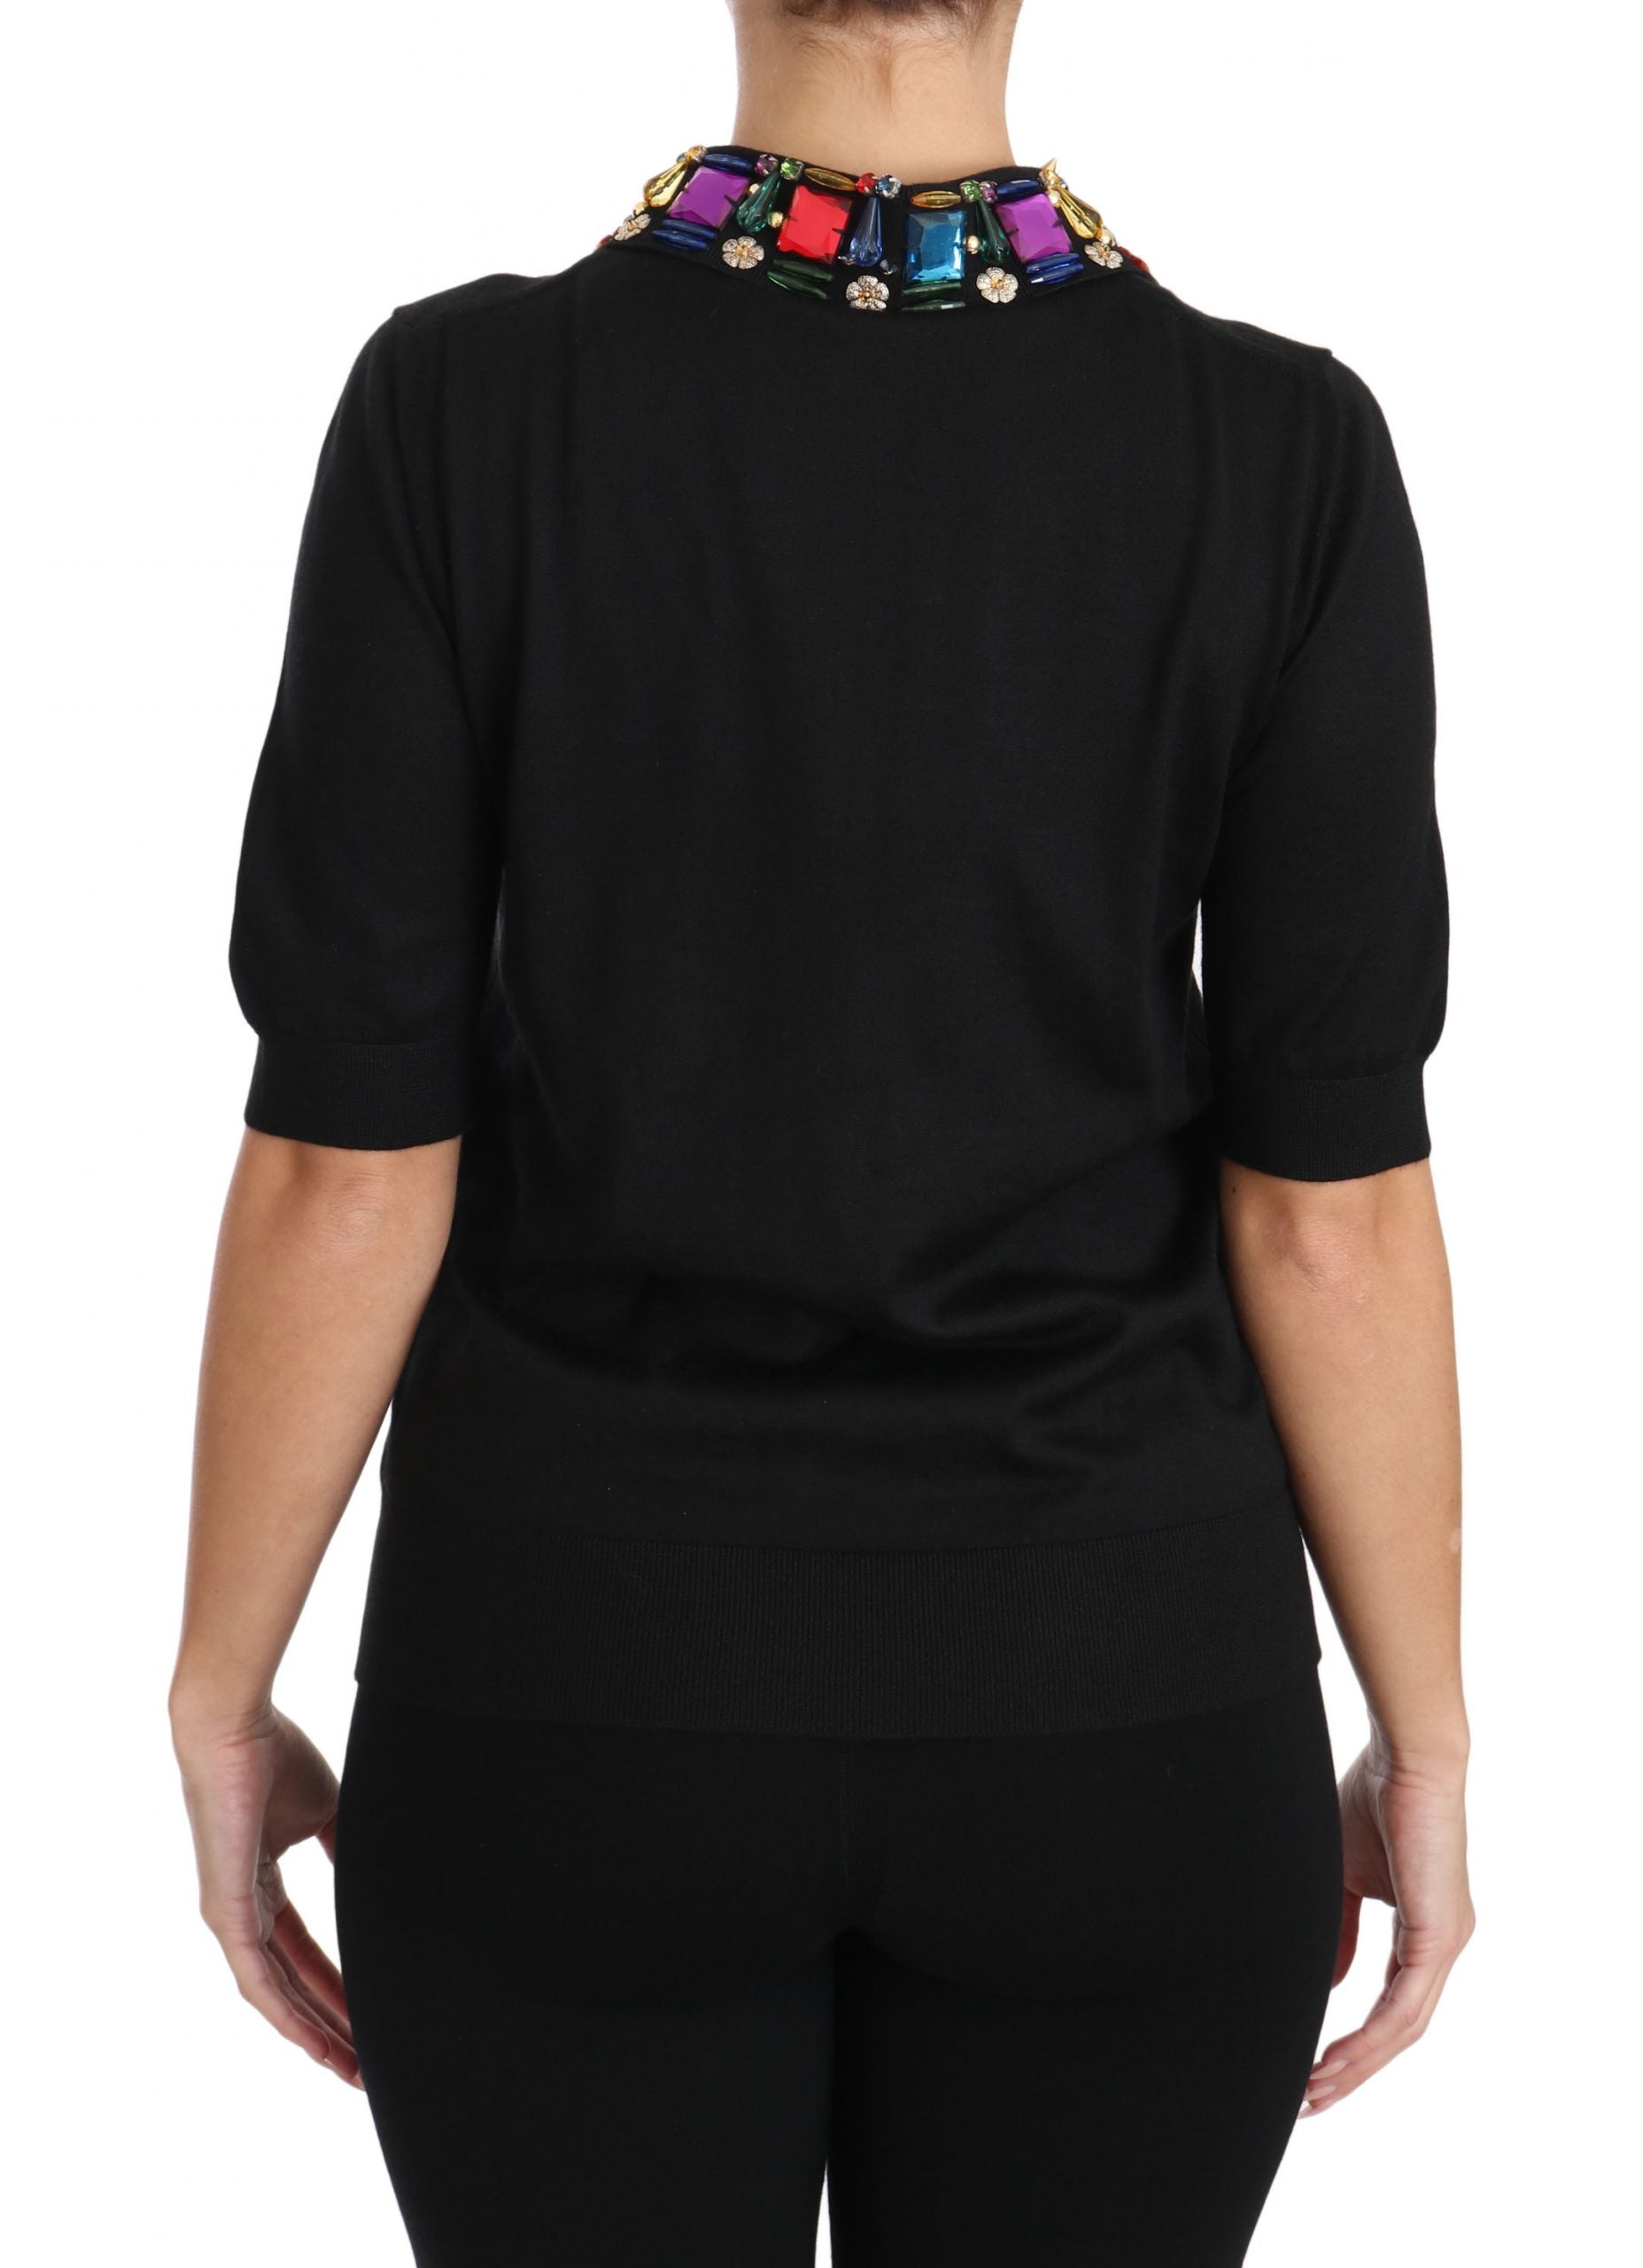 Elegant Black Cashmere Sequin Collar Top